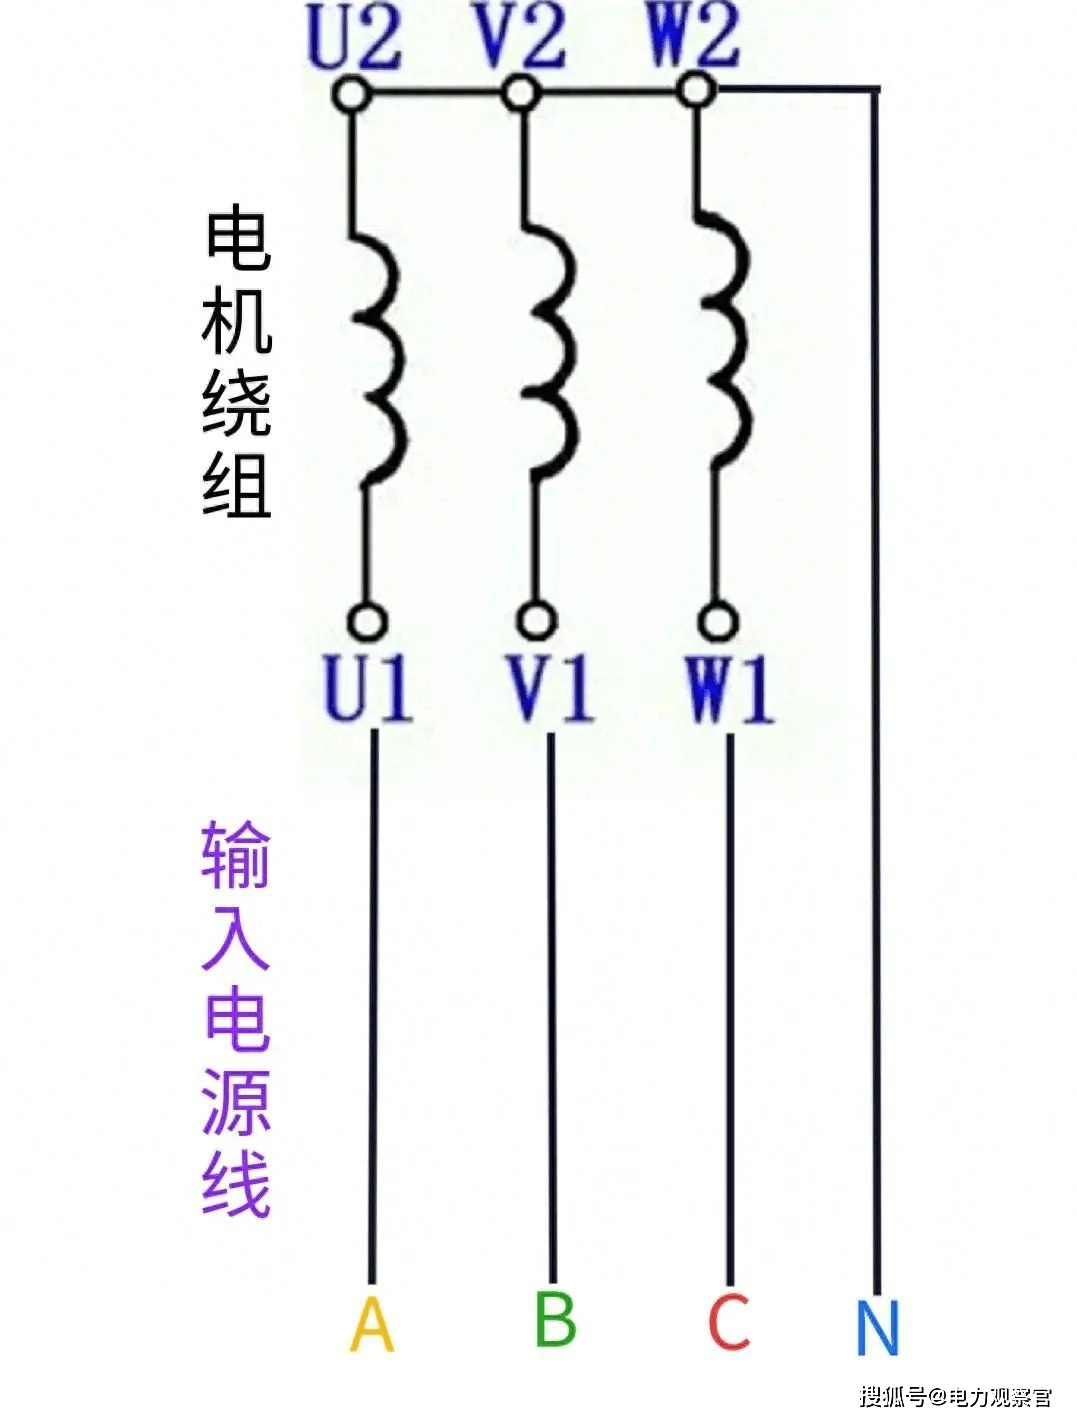 三相电机线圈绕组一般有星型接法与三角形接法